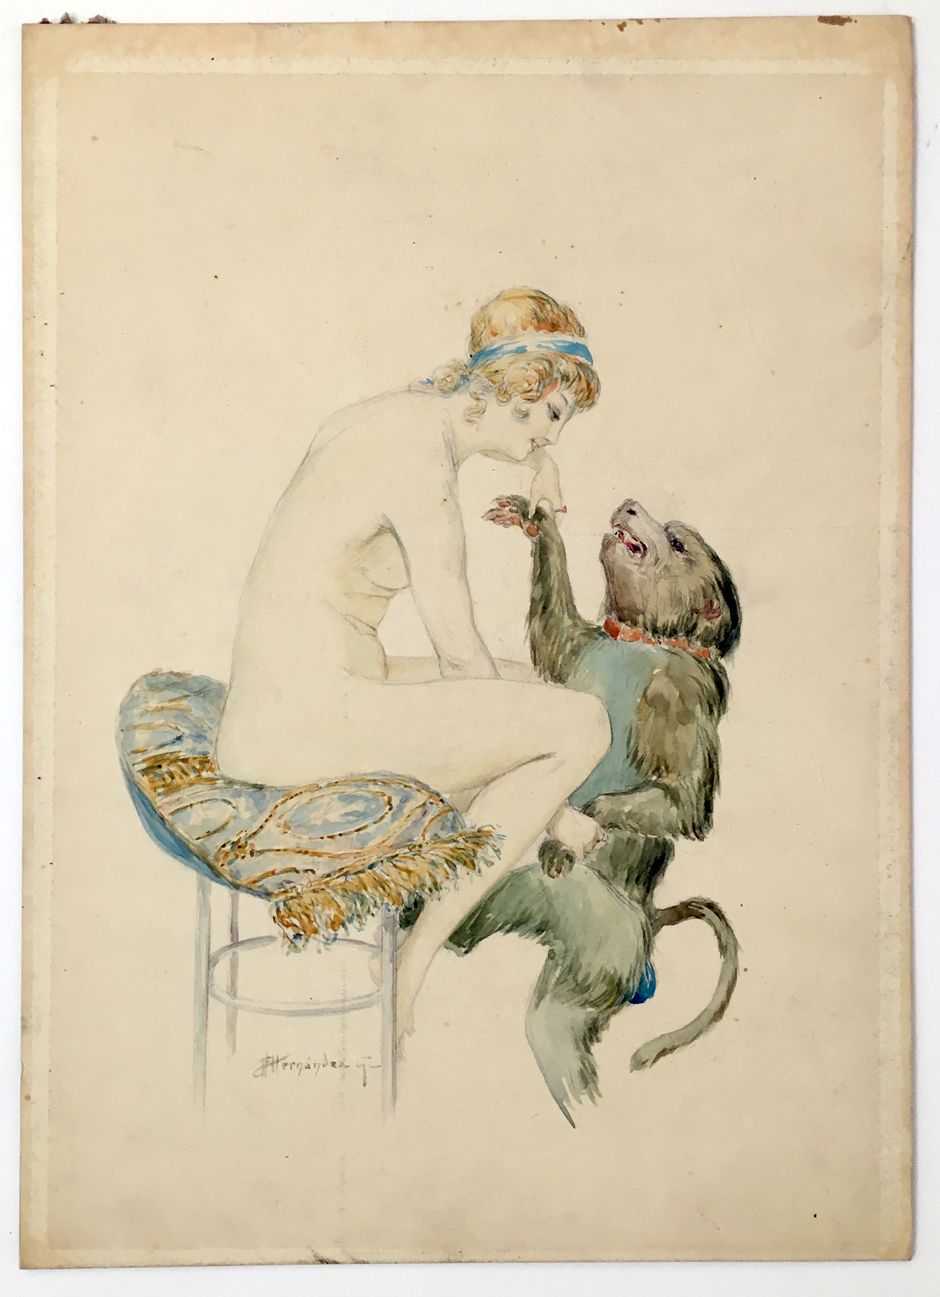 Null 
女人和猴子。大约在1920年。水彩画，38 x 27厘米。